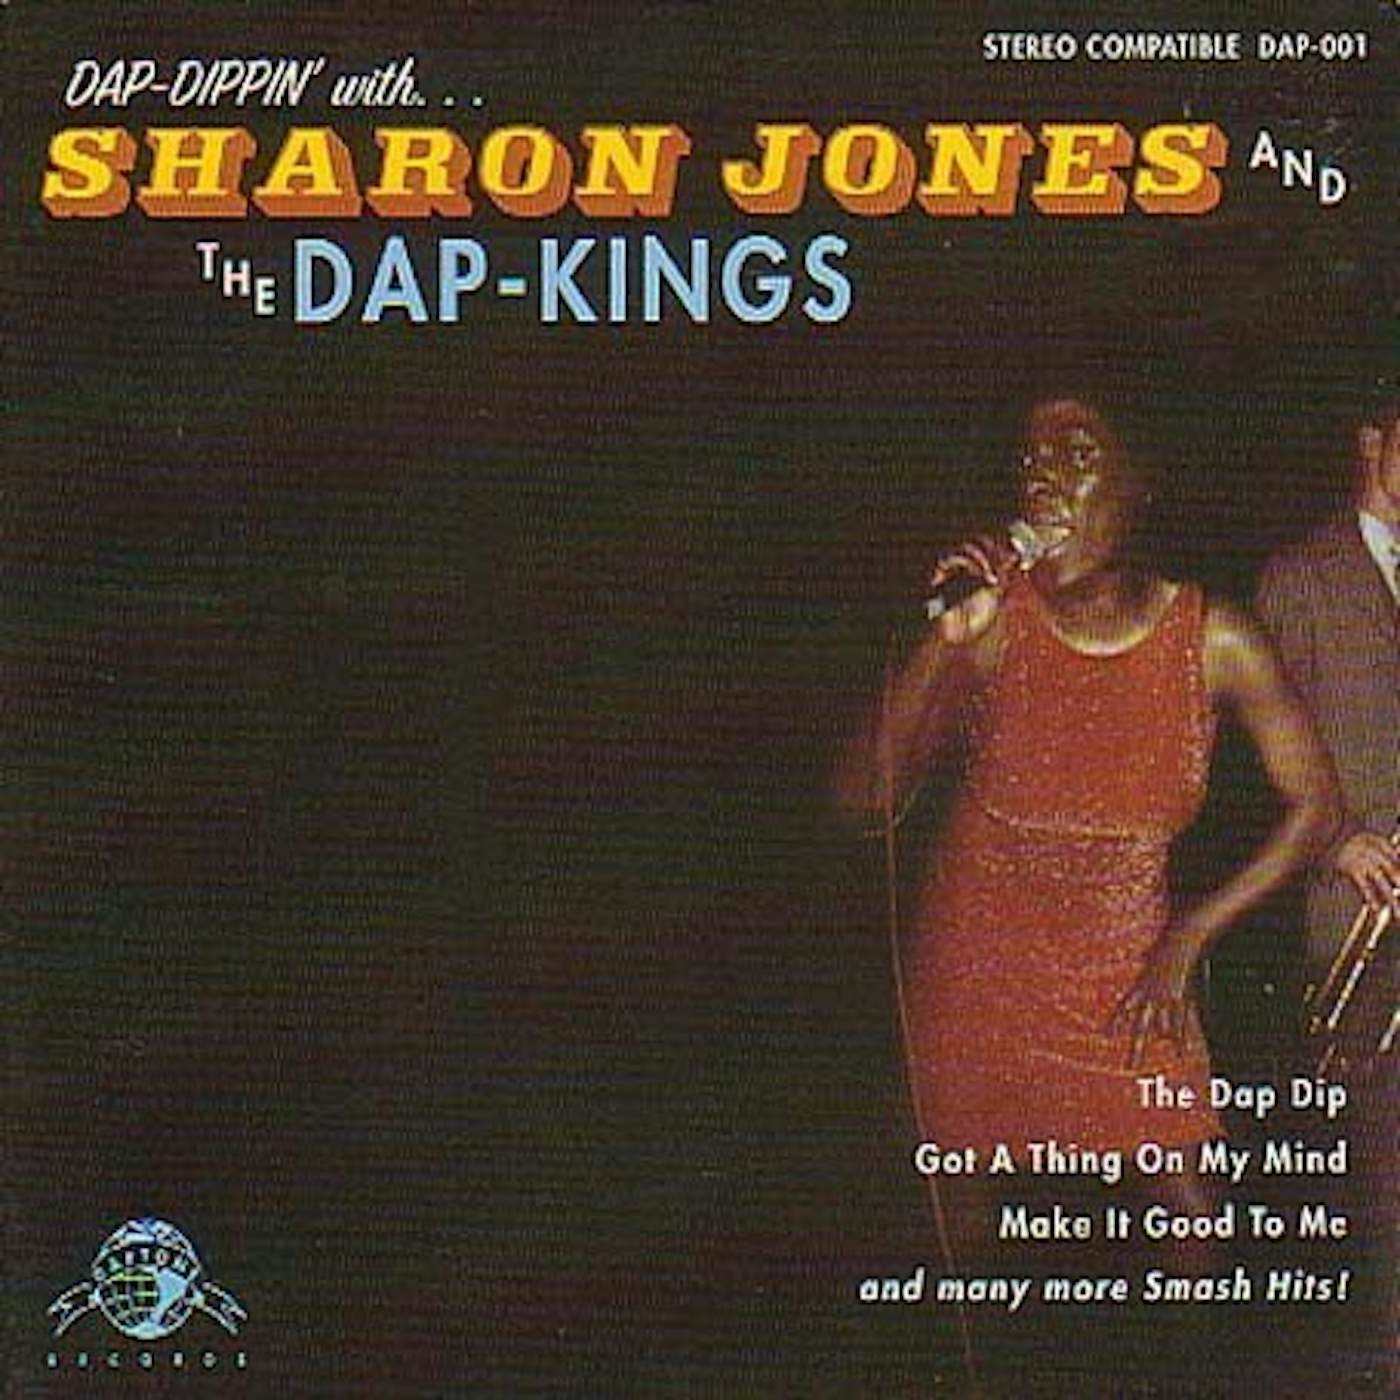 Sharon Jones & The Dap-Kings DAP-DIPPIN CD